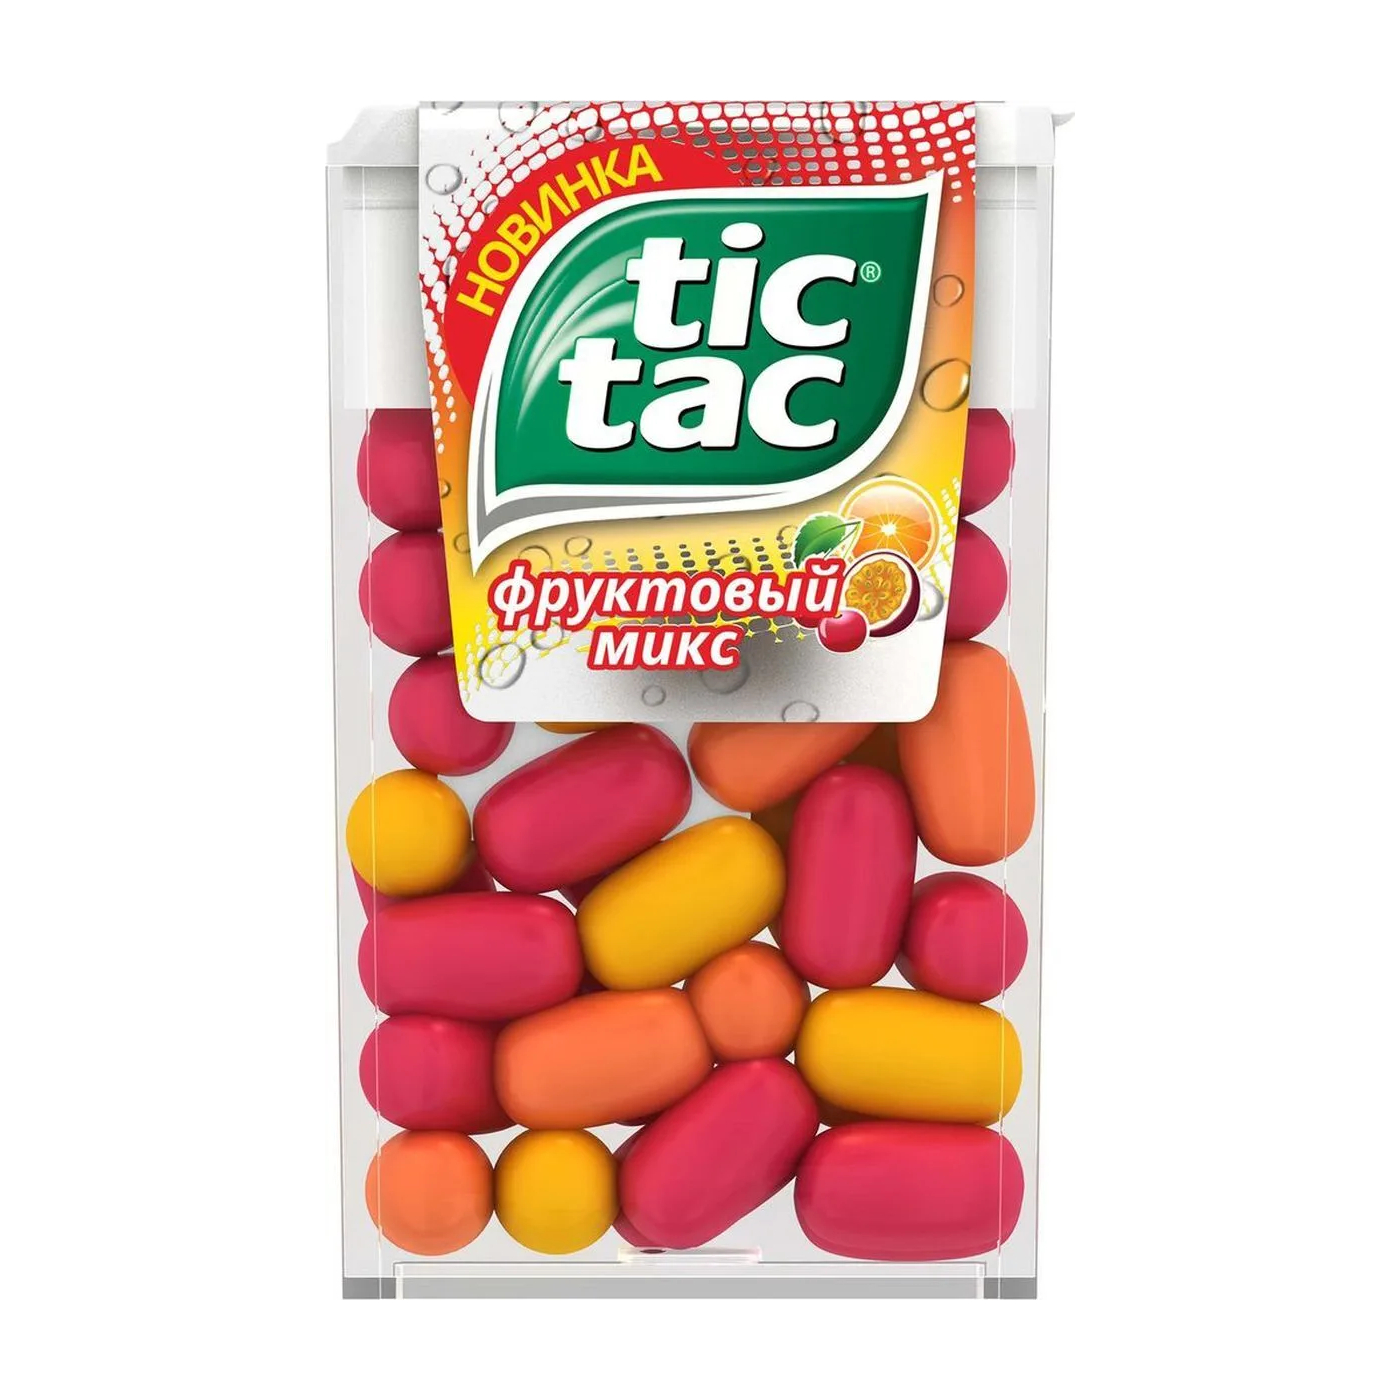 Драже Tic Tac фруктовый микс, 16 г драже tic tac фруктовый микс 16 г